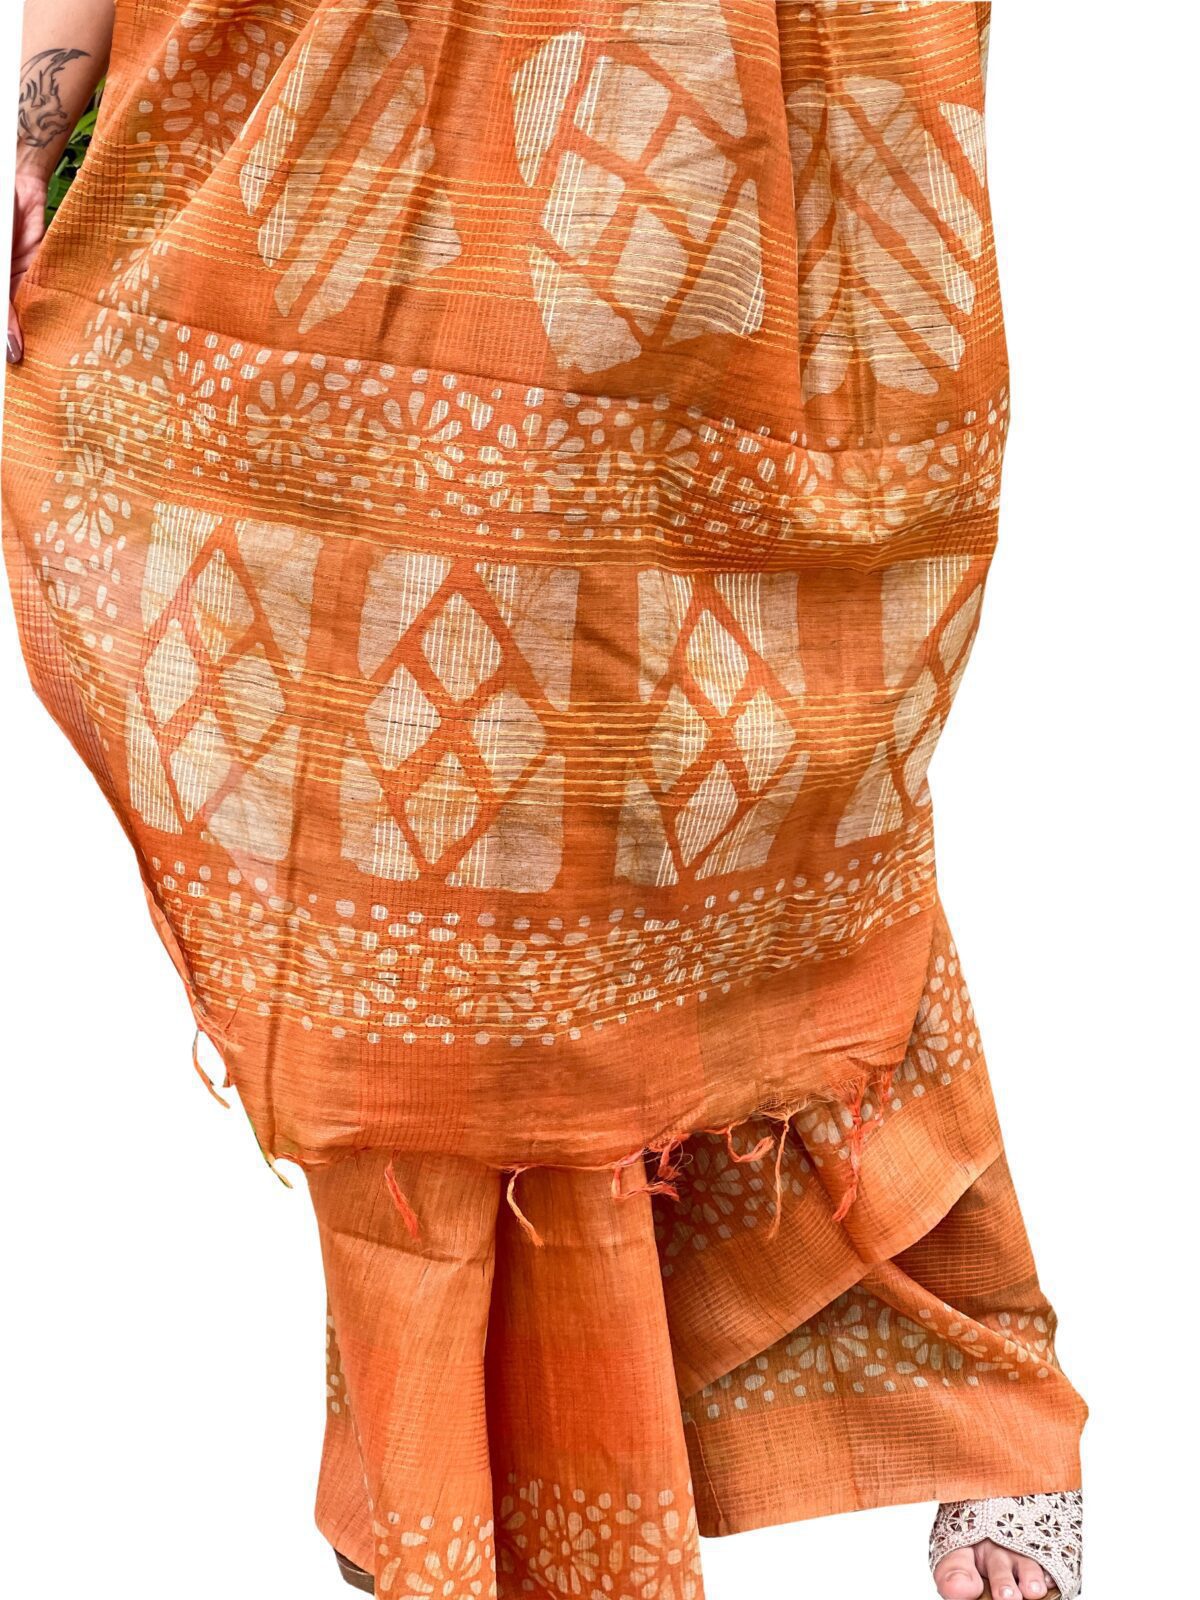 Handmade tussar silk saree with batik print